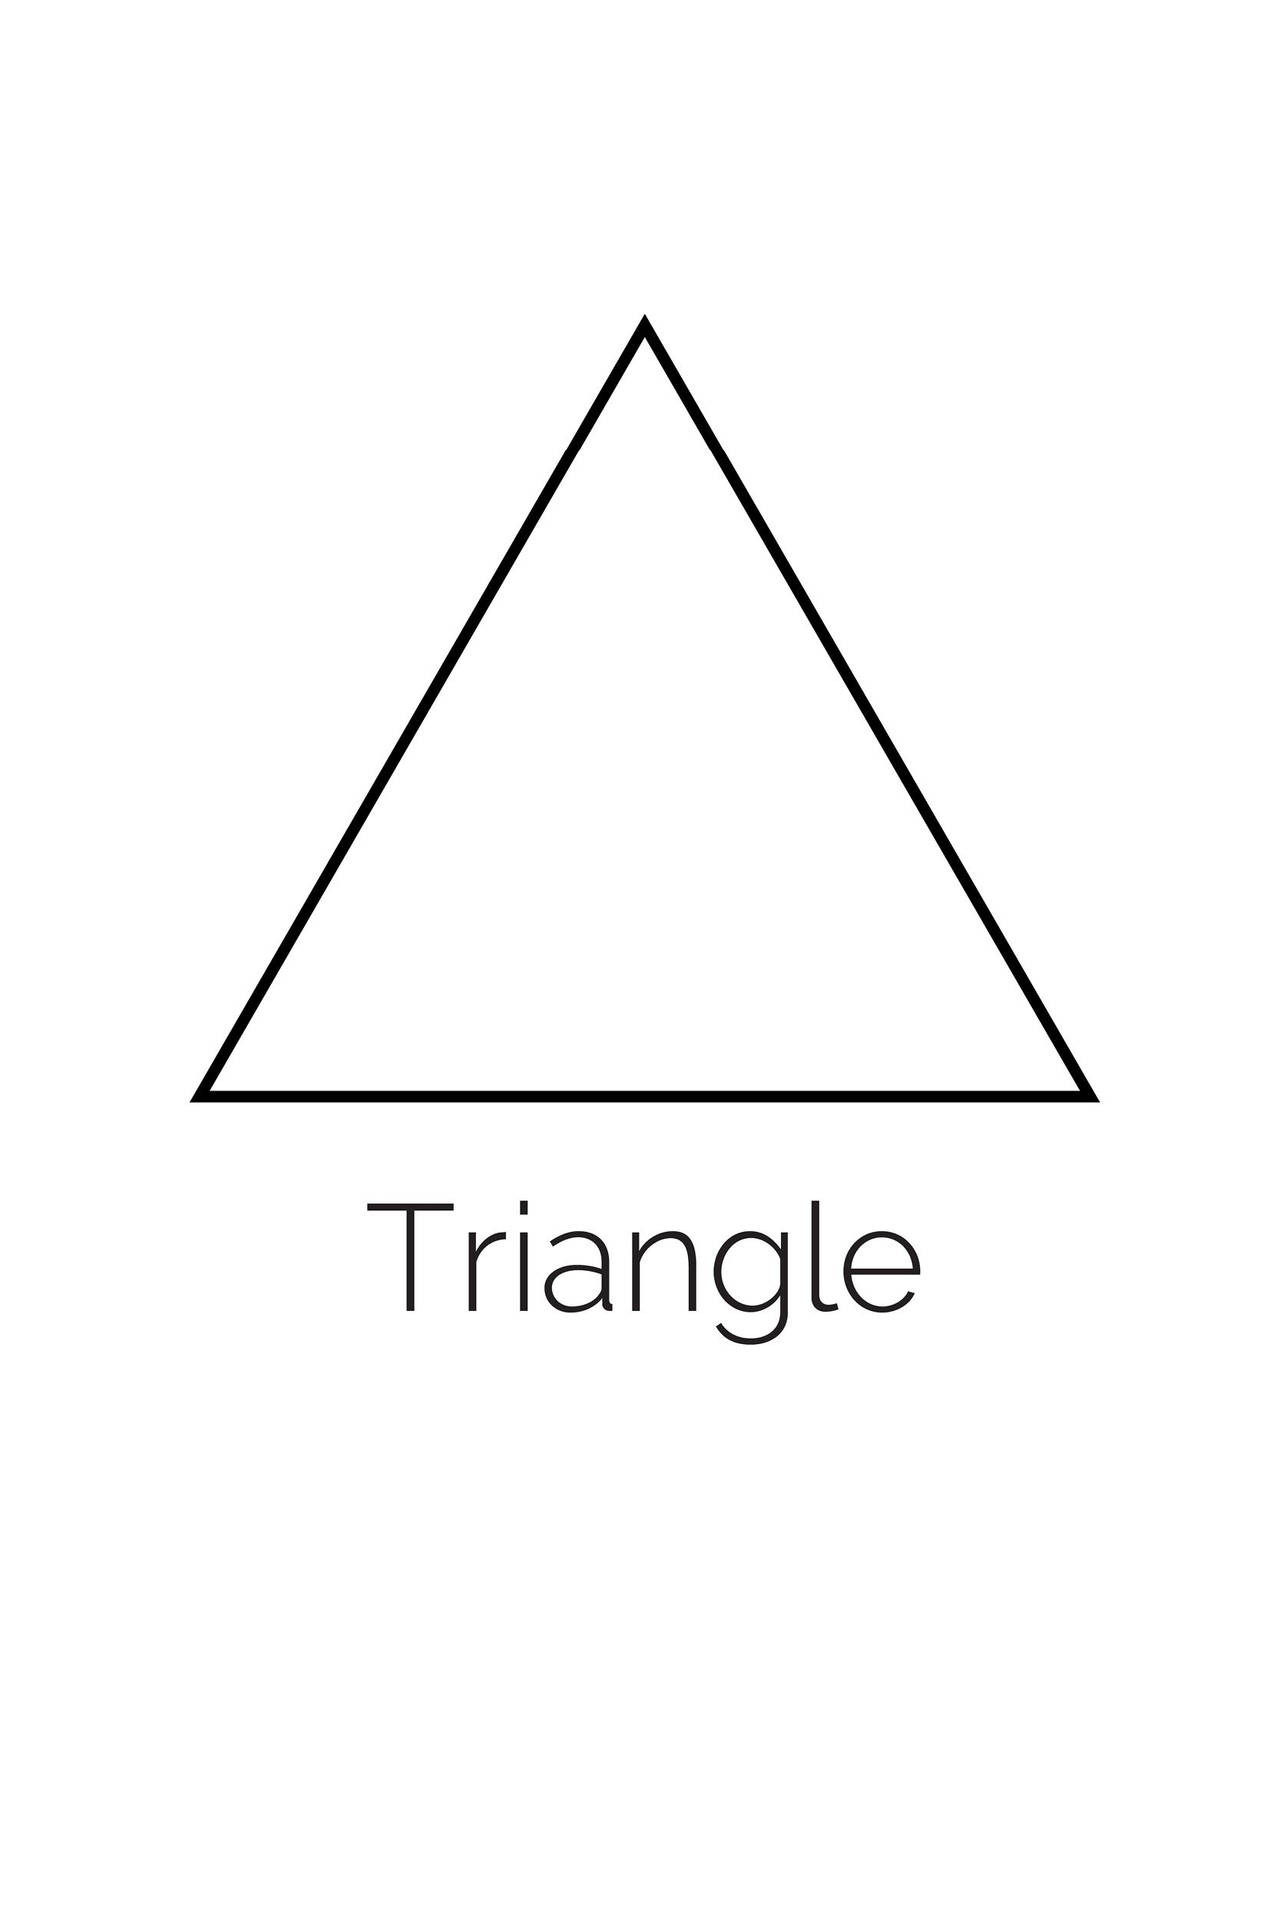 Descriptive Triangle Outline Picture